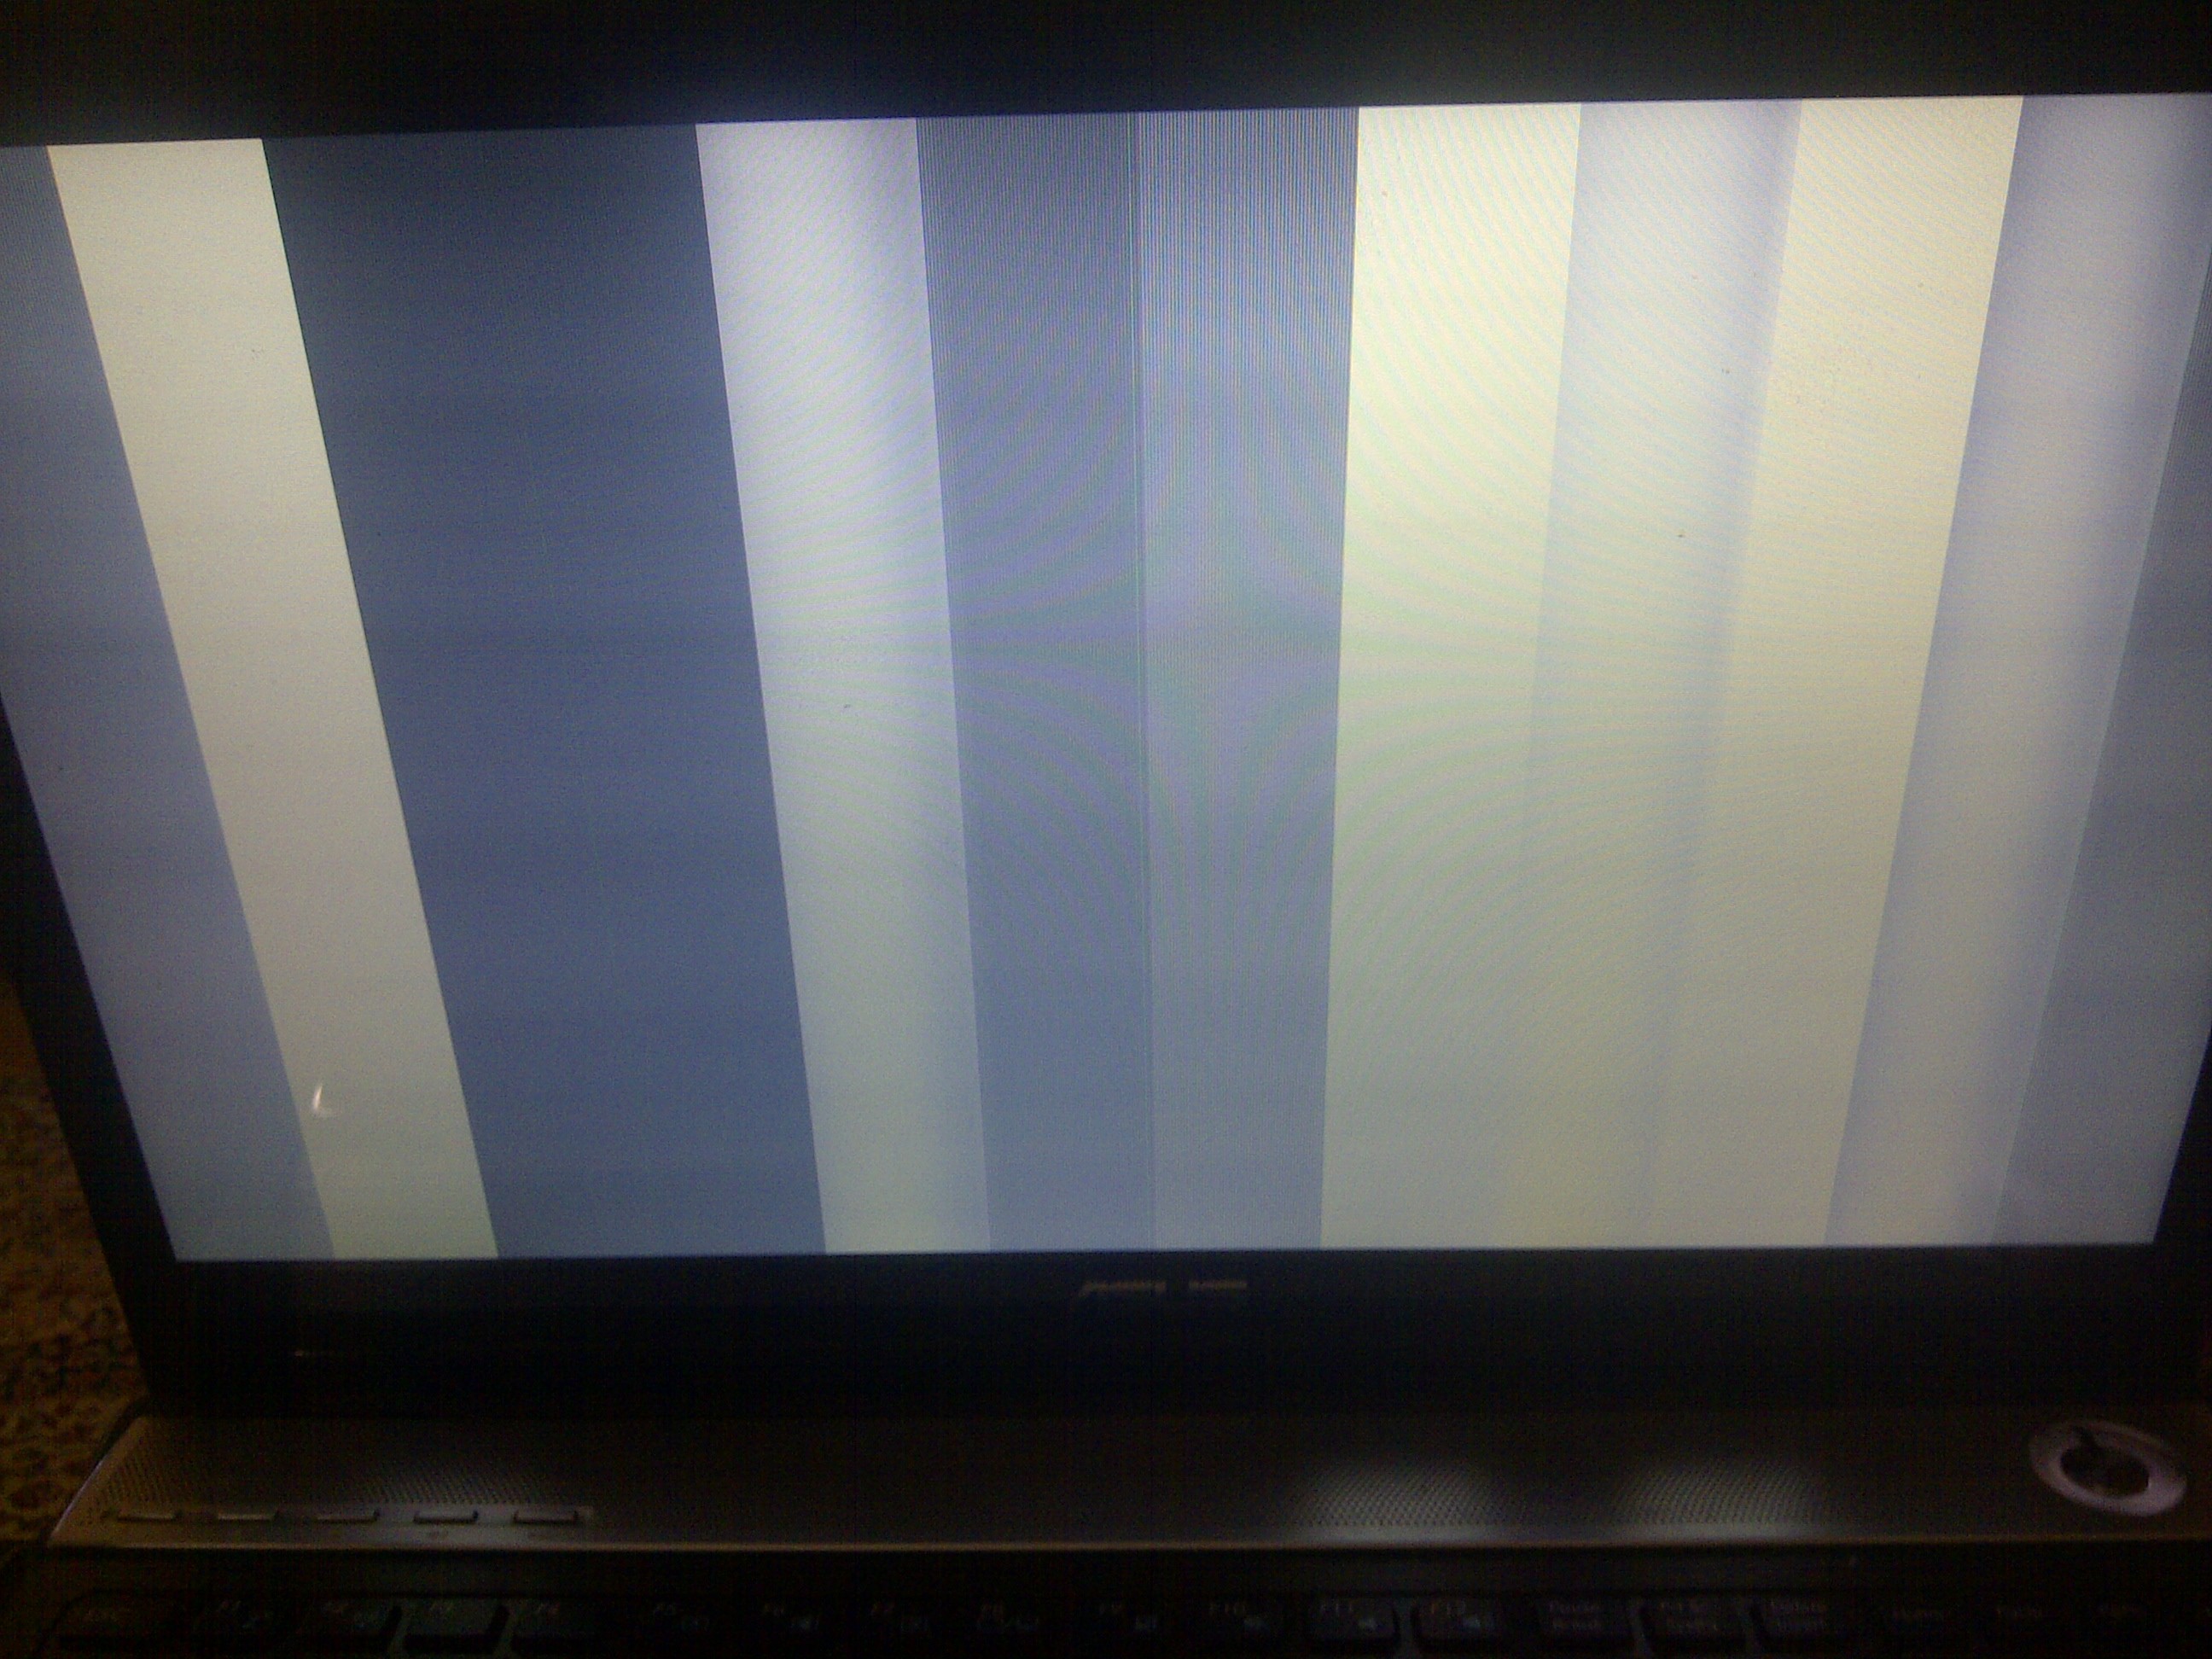  Laptop ekranını bükerken karıncalanma